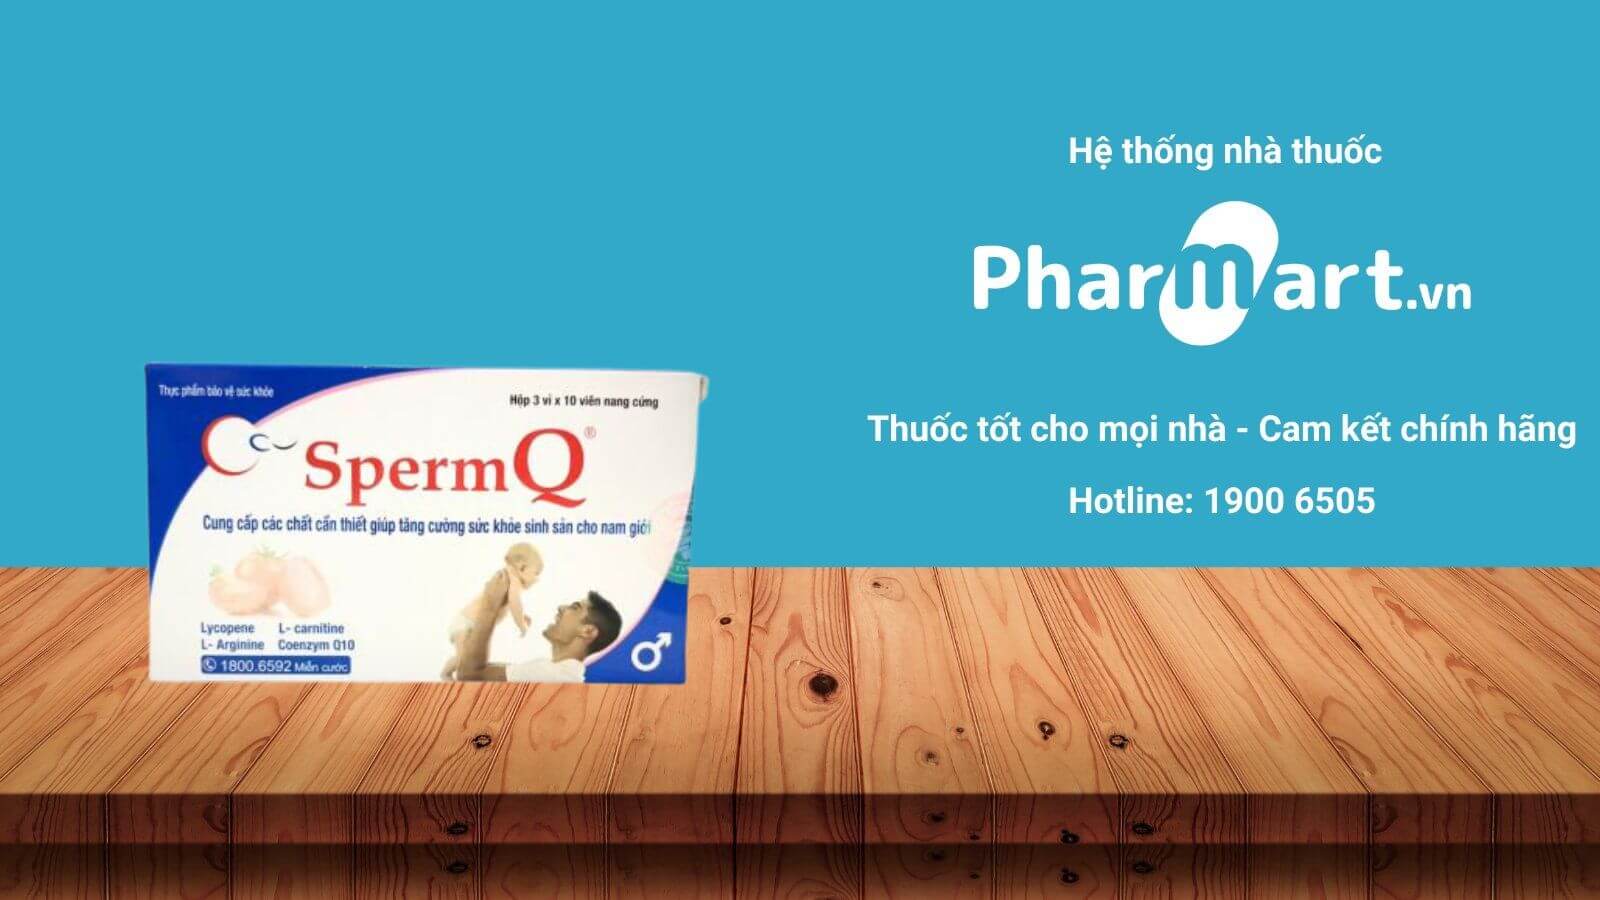 Liên hệ Pharmart.vn để đảm bảo mua Sperm Q chính hãng